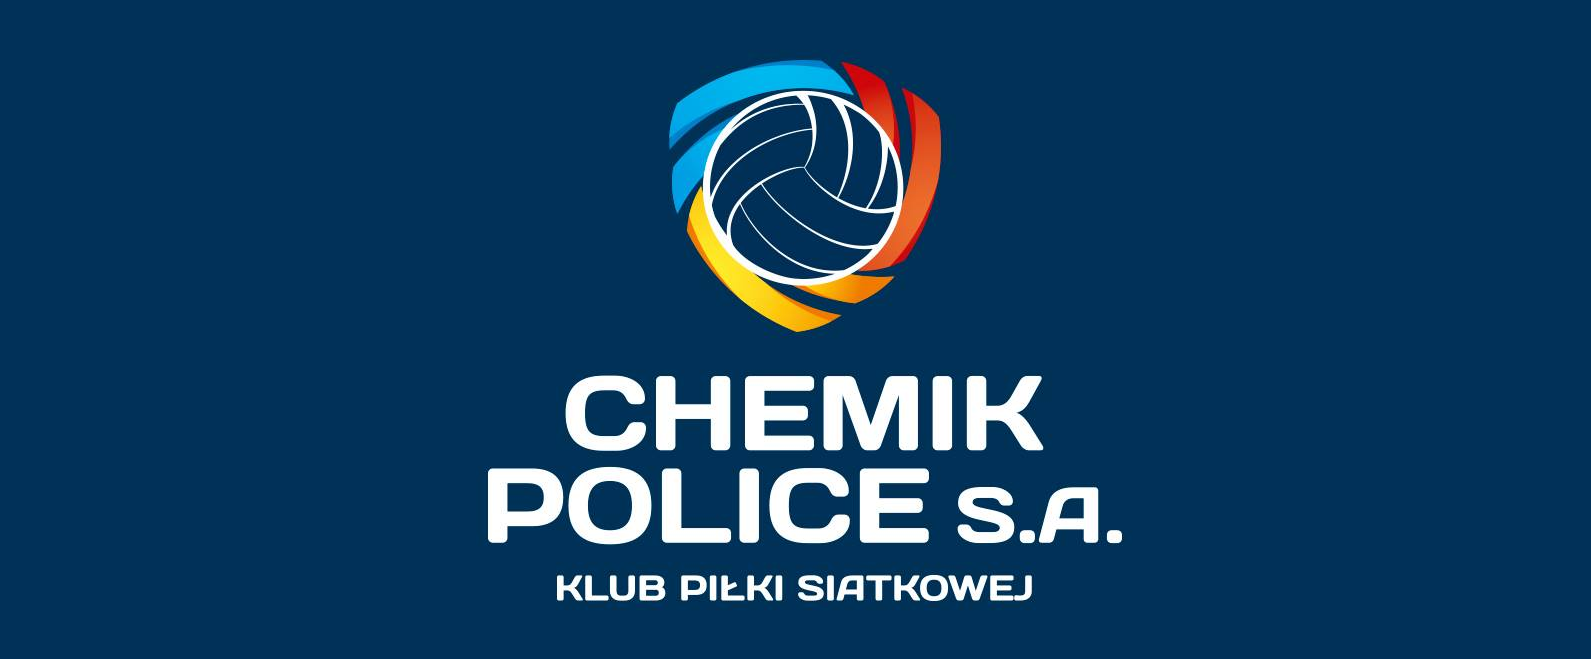 Trzy siatkarki Chemika Police powołane do reprezentacji Polski!